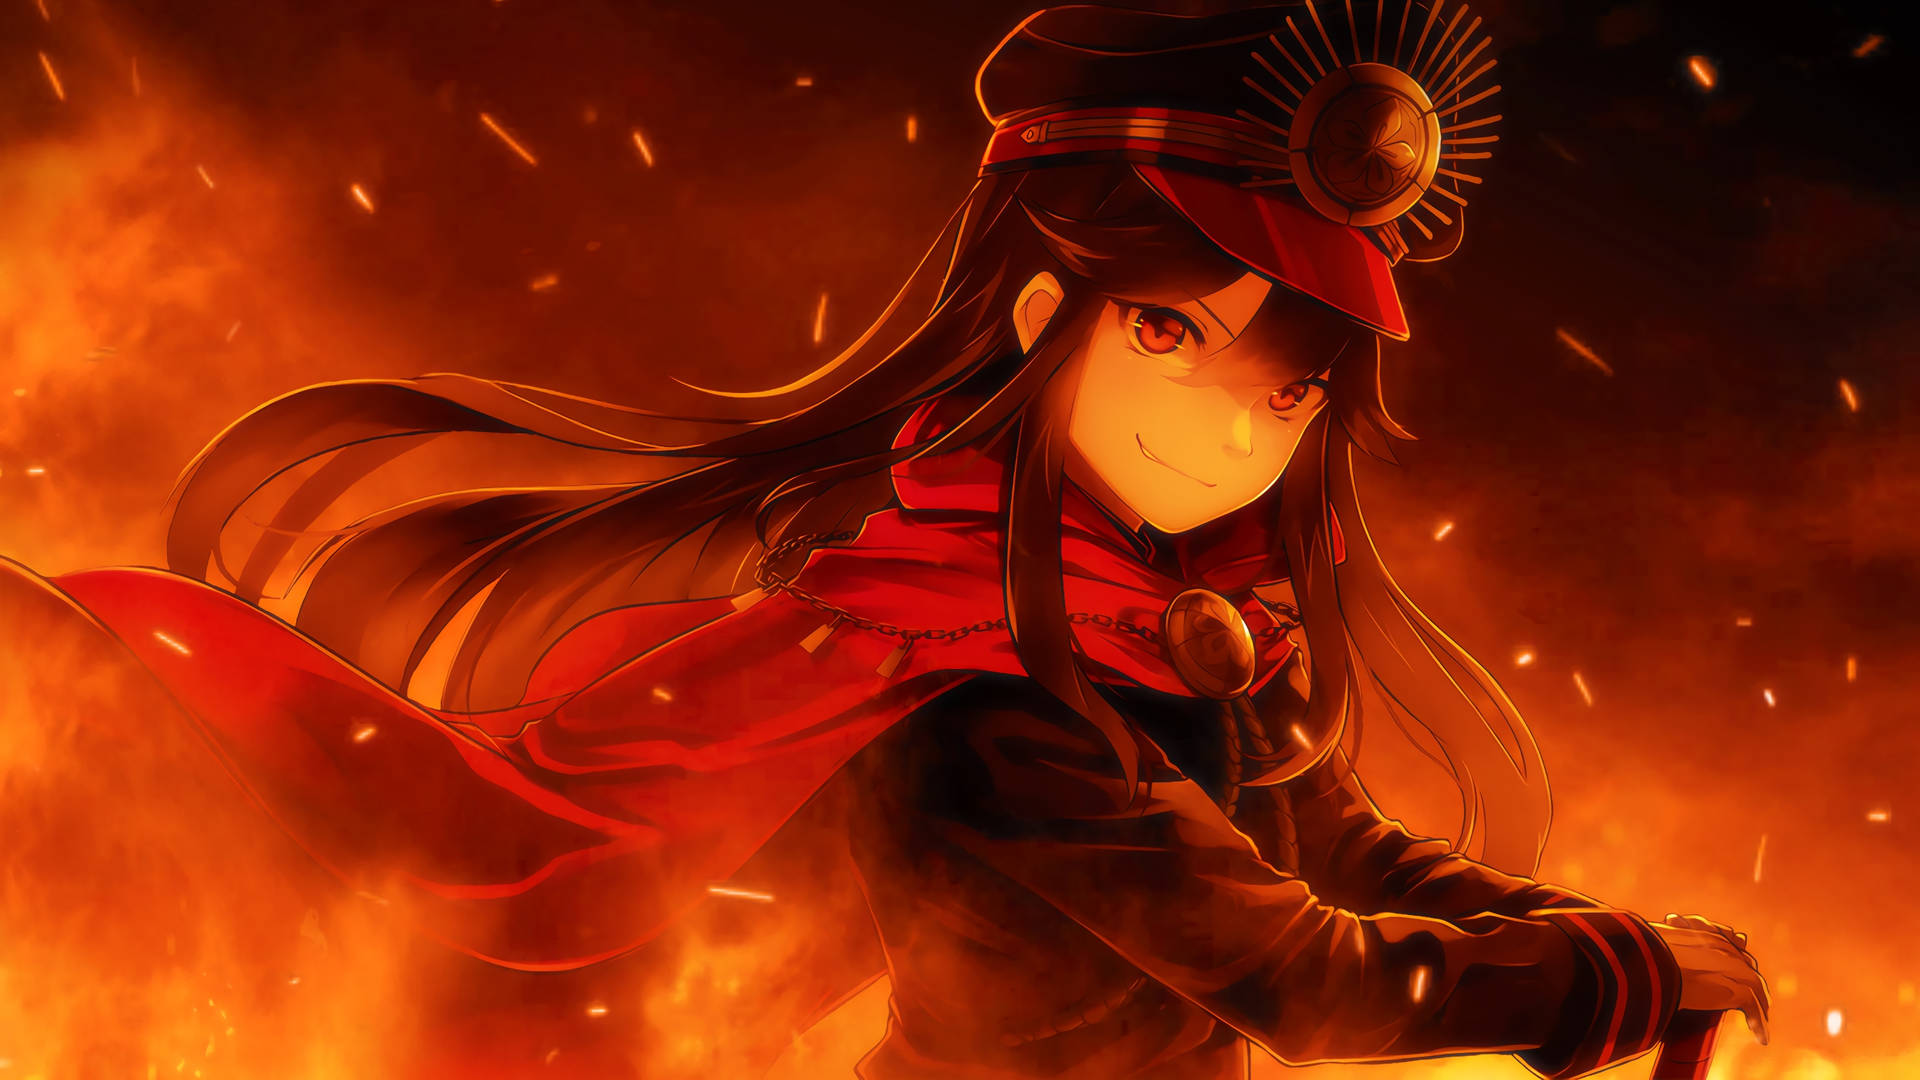 Oda Nobunaga Fire Anime